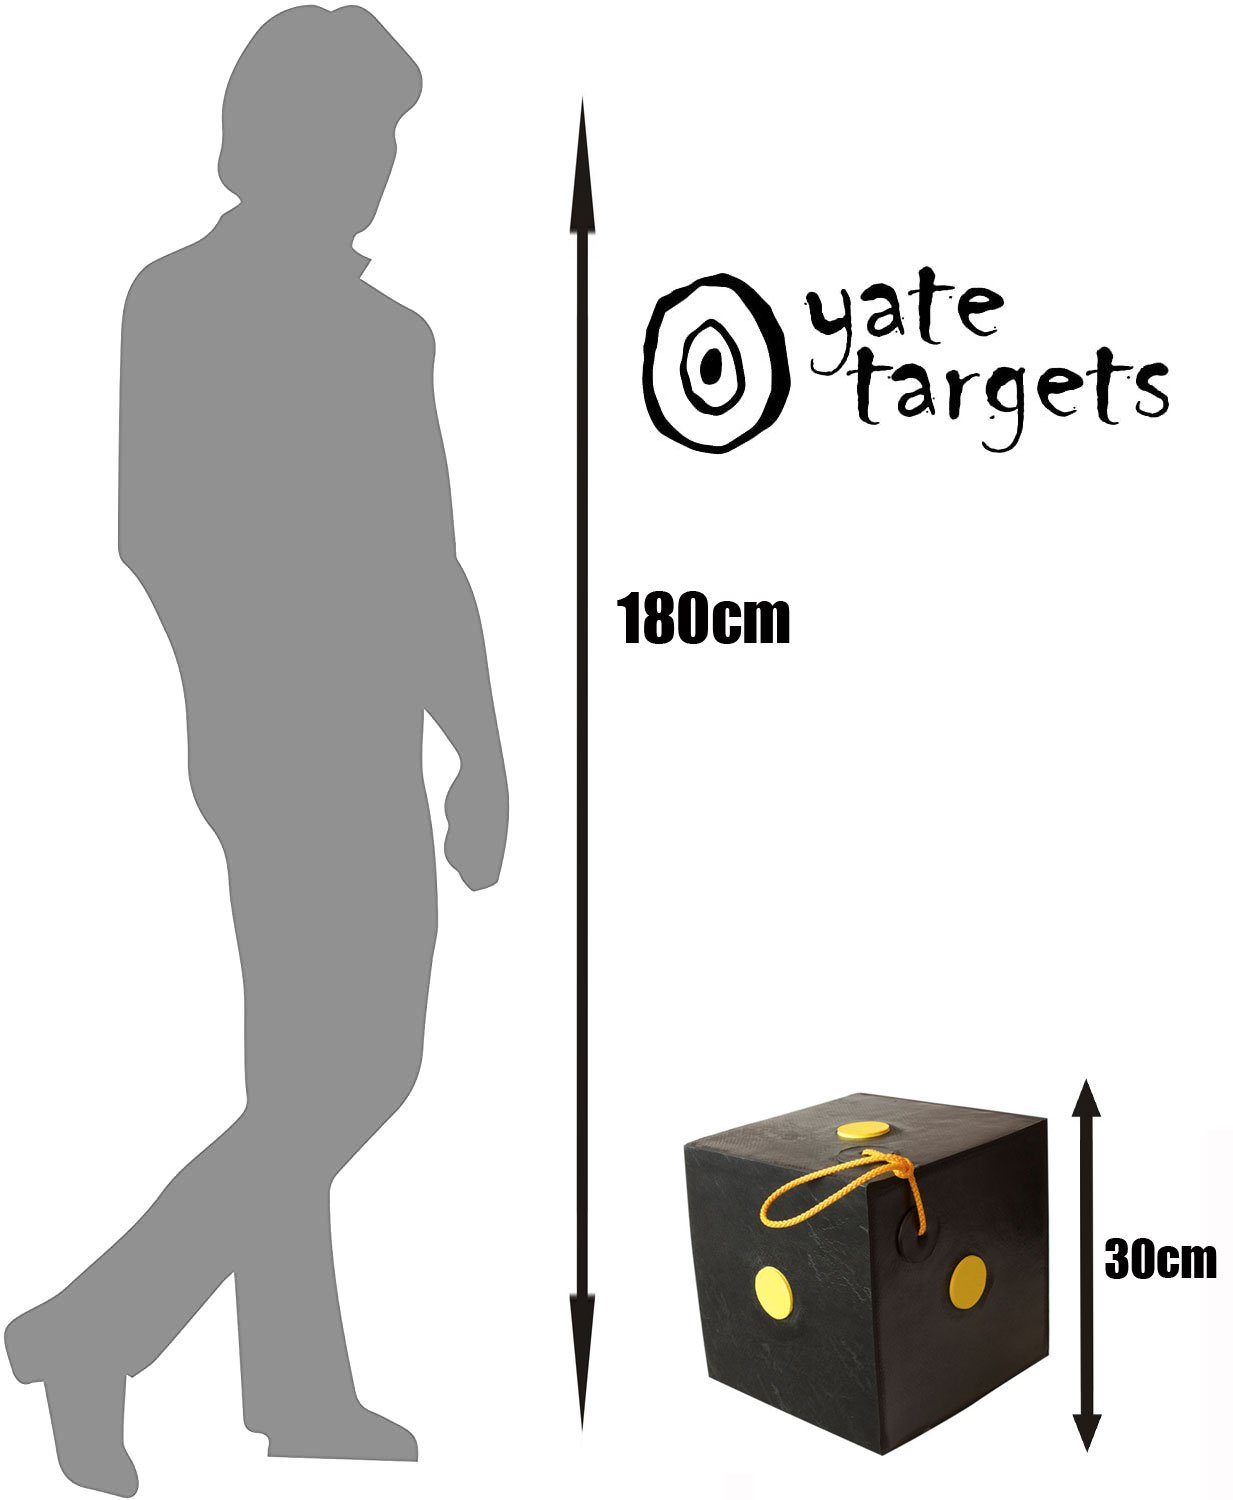 Yate 2, Bogenschießen Zielscheibe Wetterfest 30cm Schießwürfel Yate Variante Cube Targets